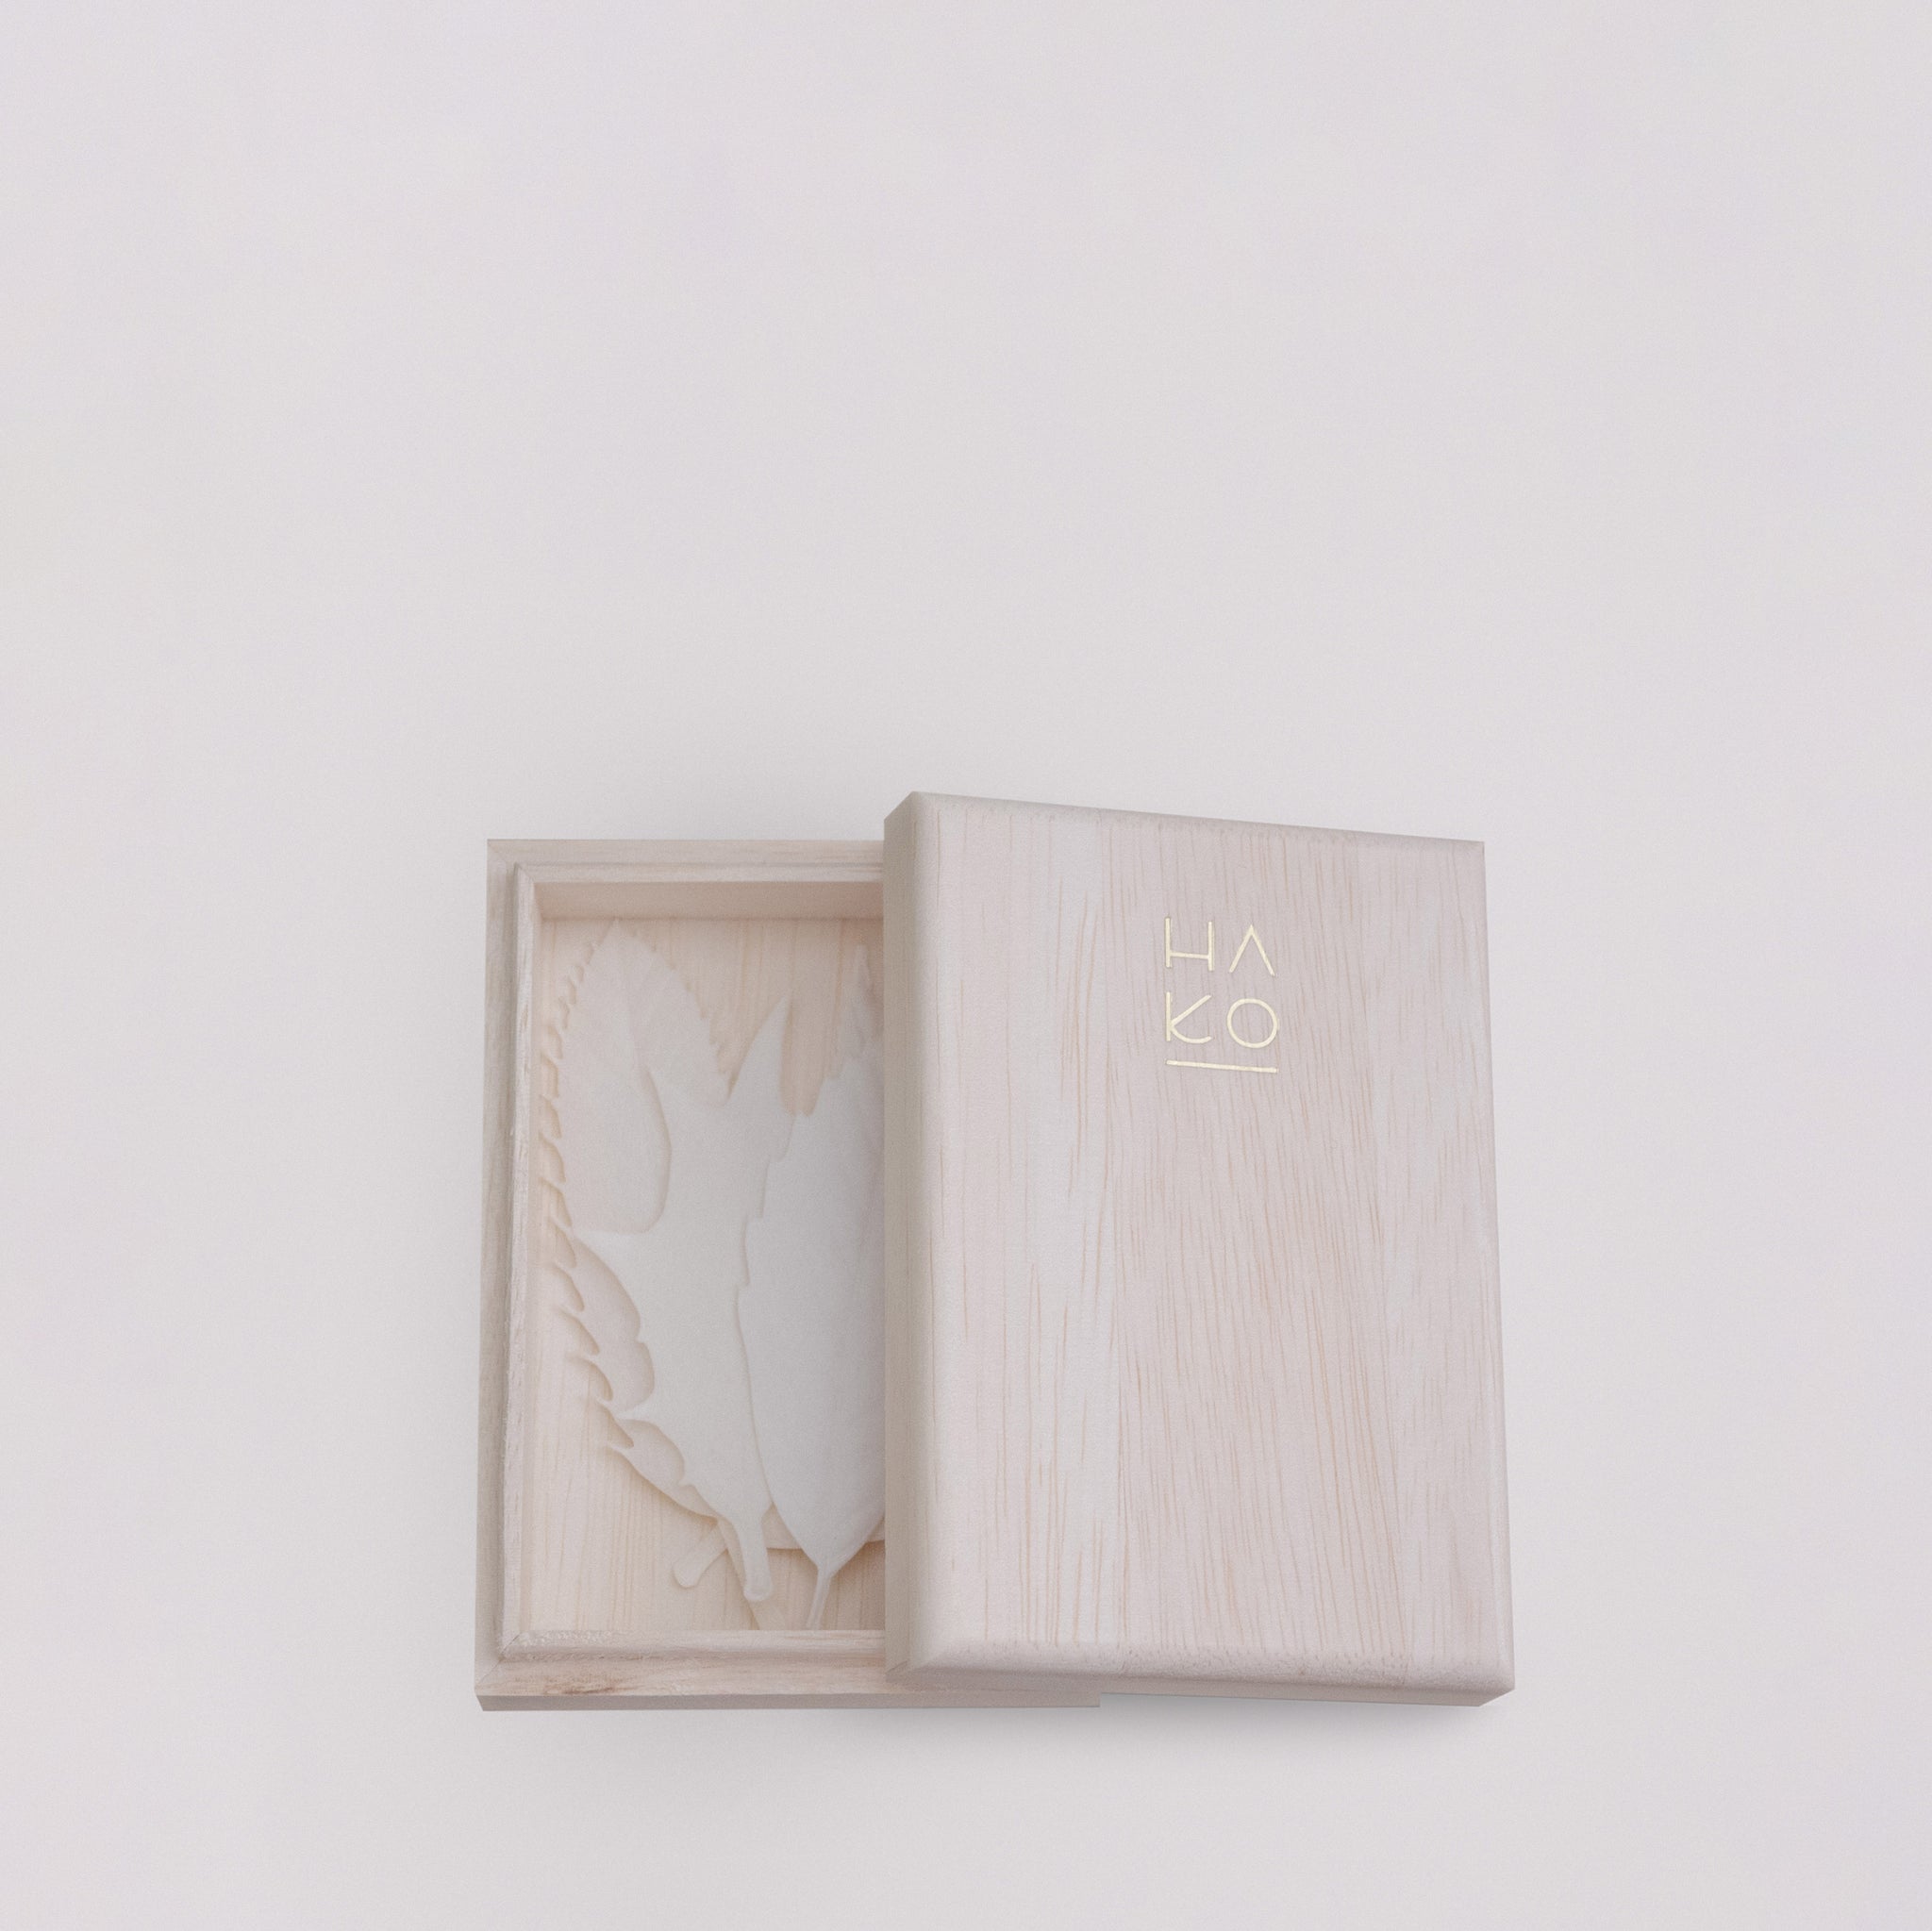 HA KO Incense – 5 Leaf Box